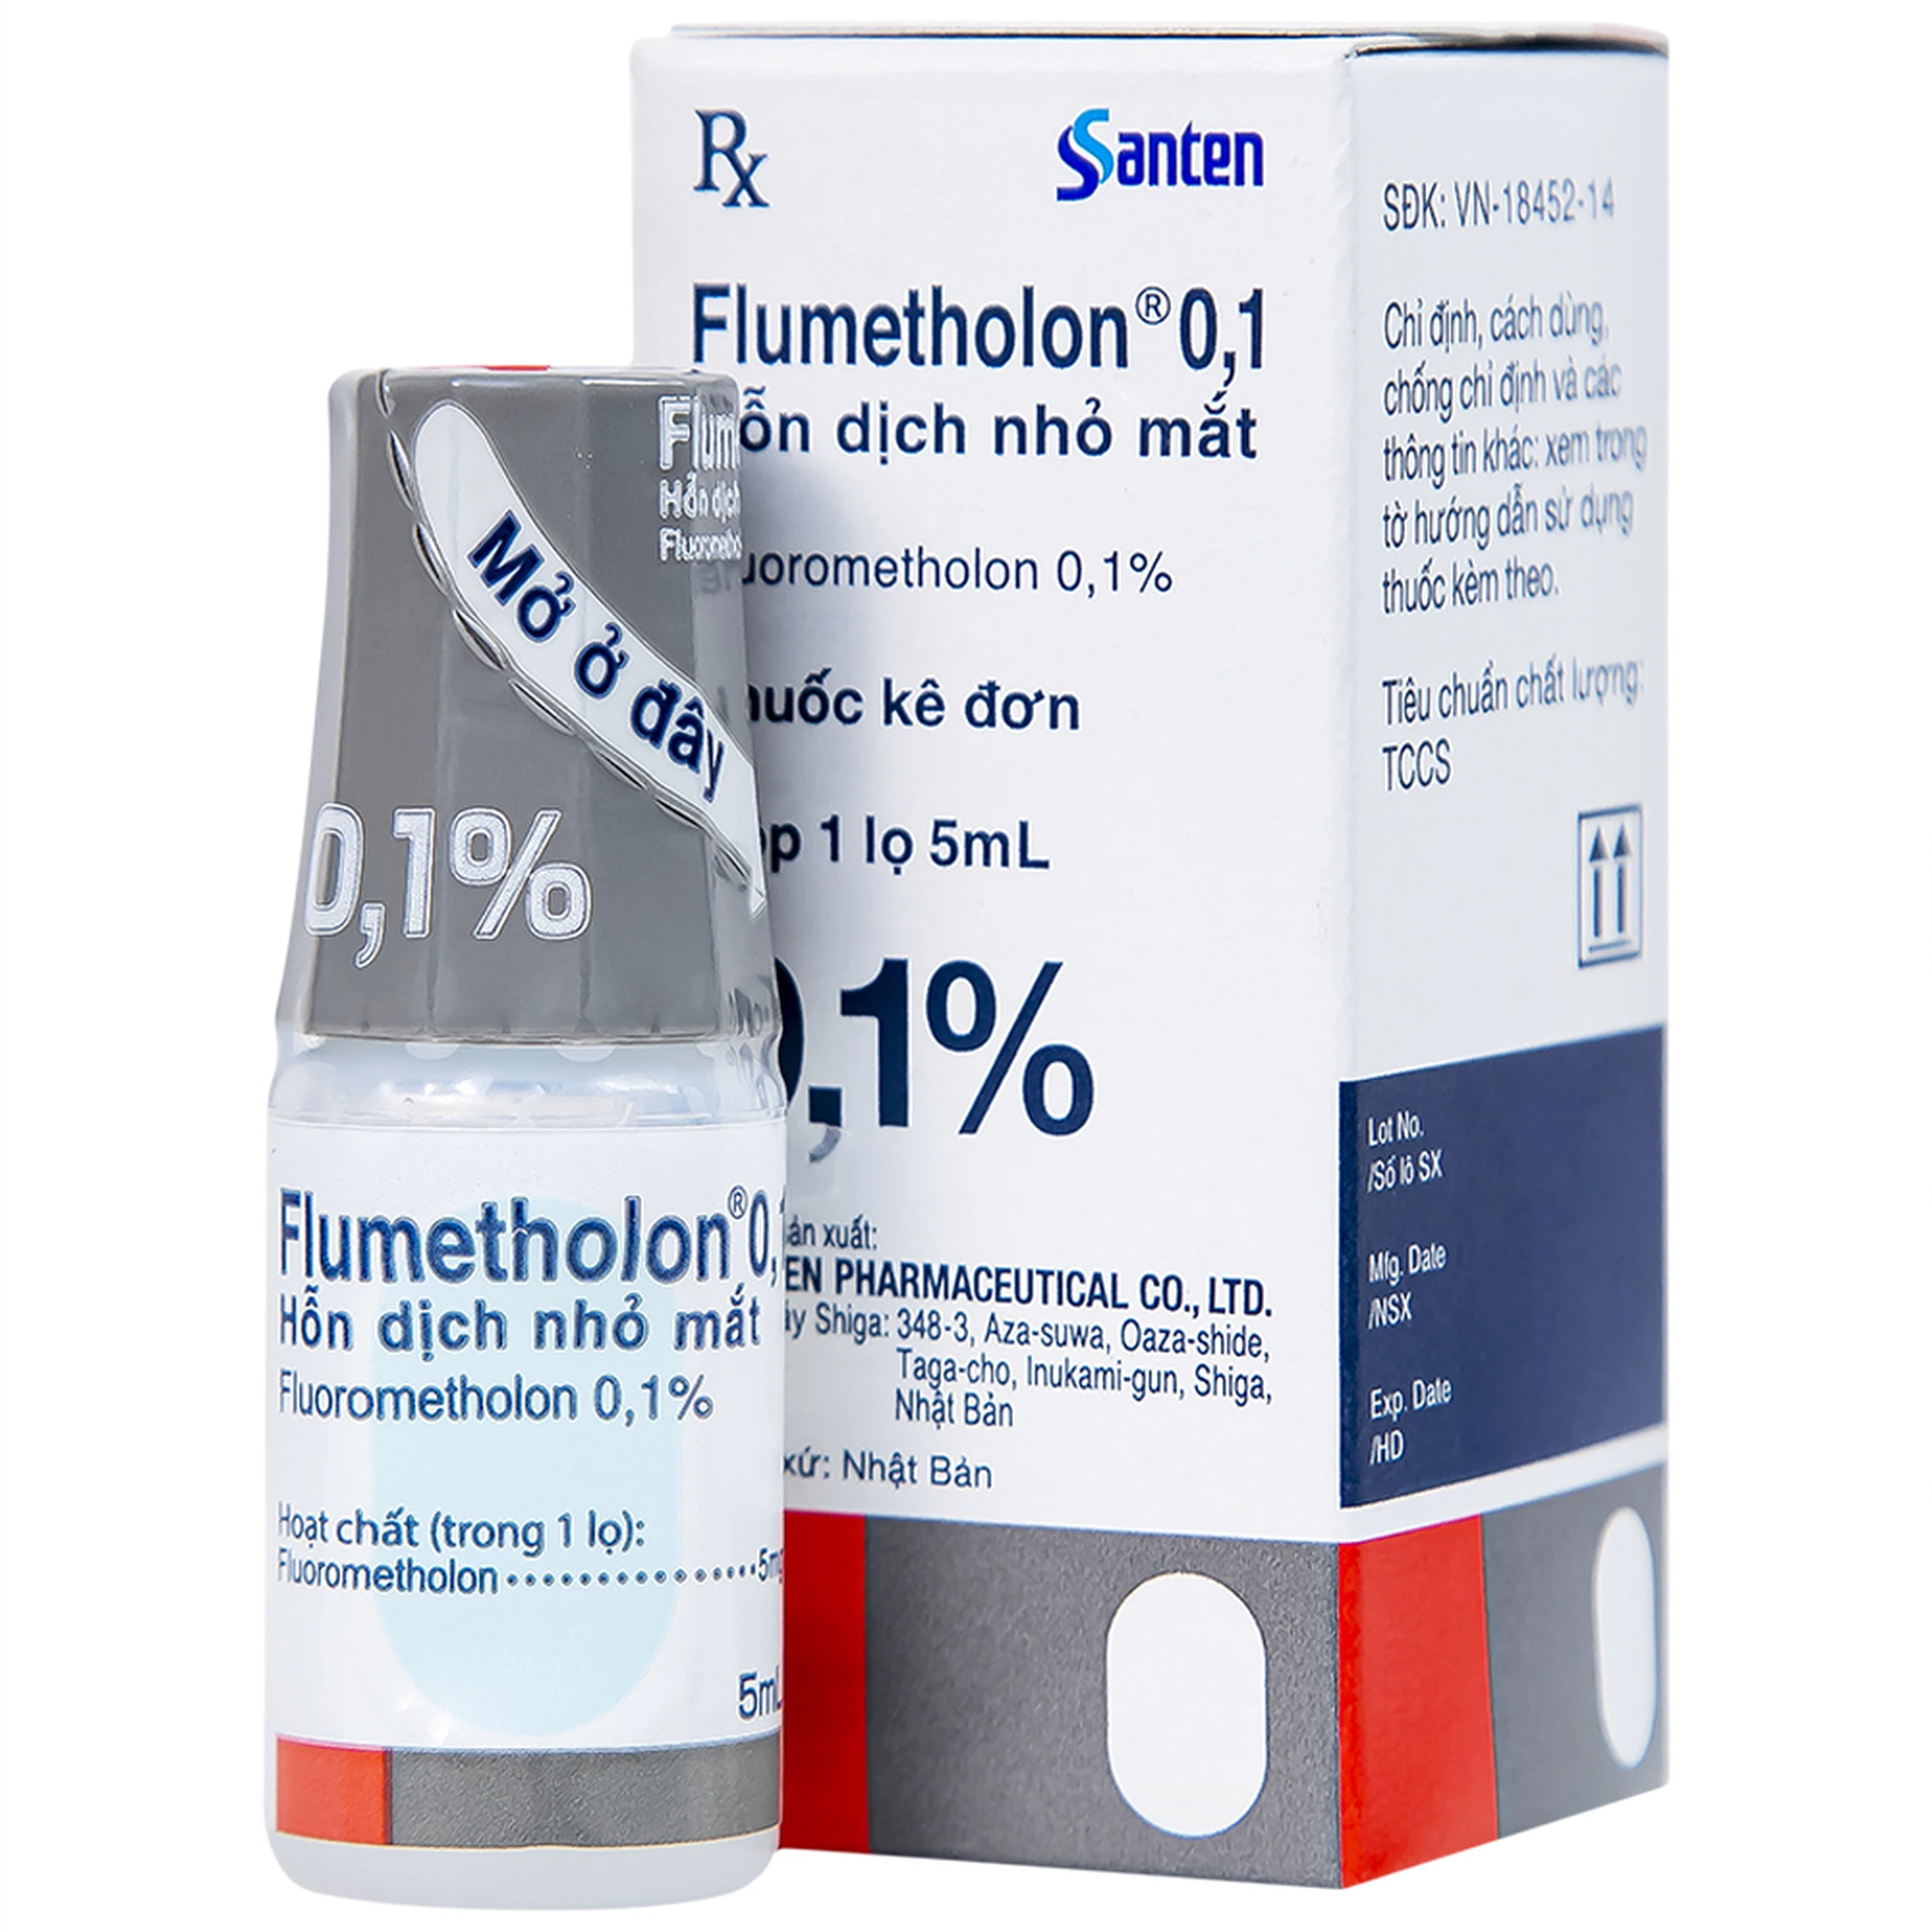 Hỗn dịch nhỏ mắt Flumetholon 0.1% Santen điều trị các bệnh viêm phía ngoài mắt (5ml)